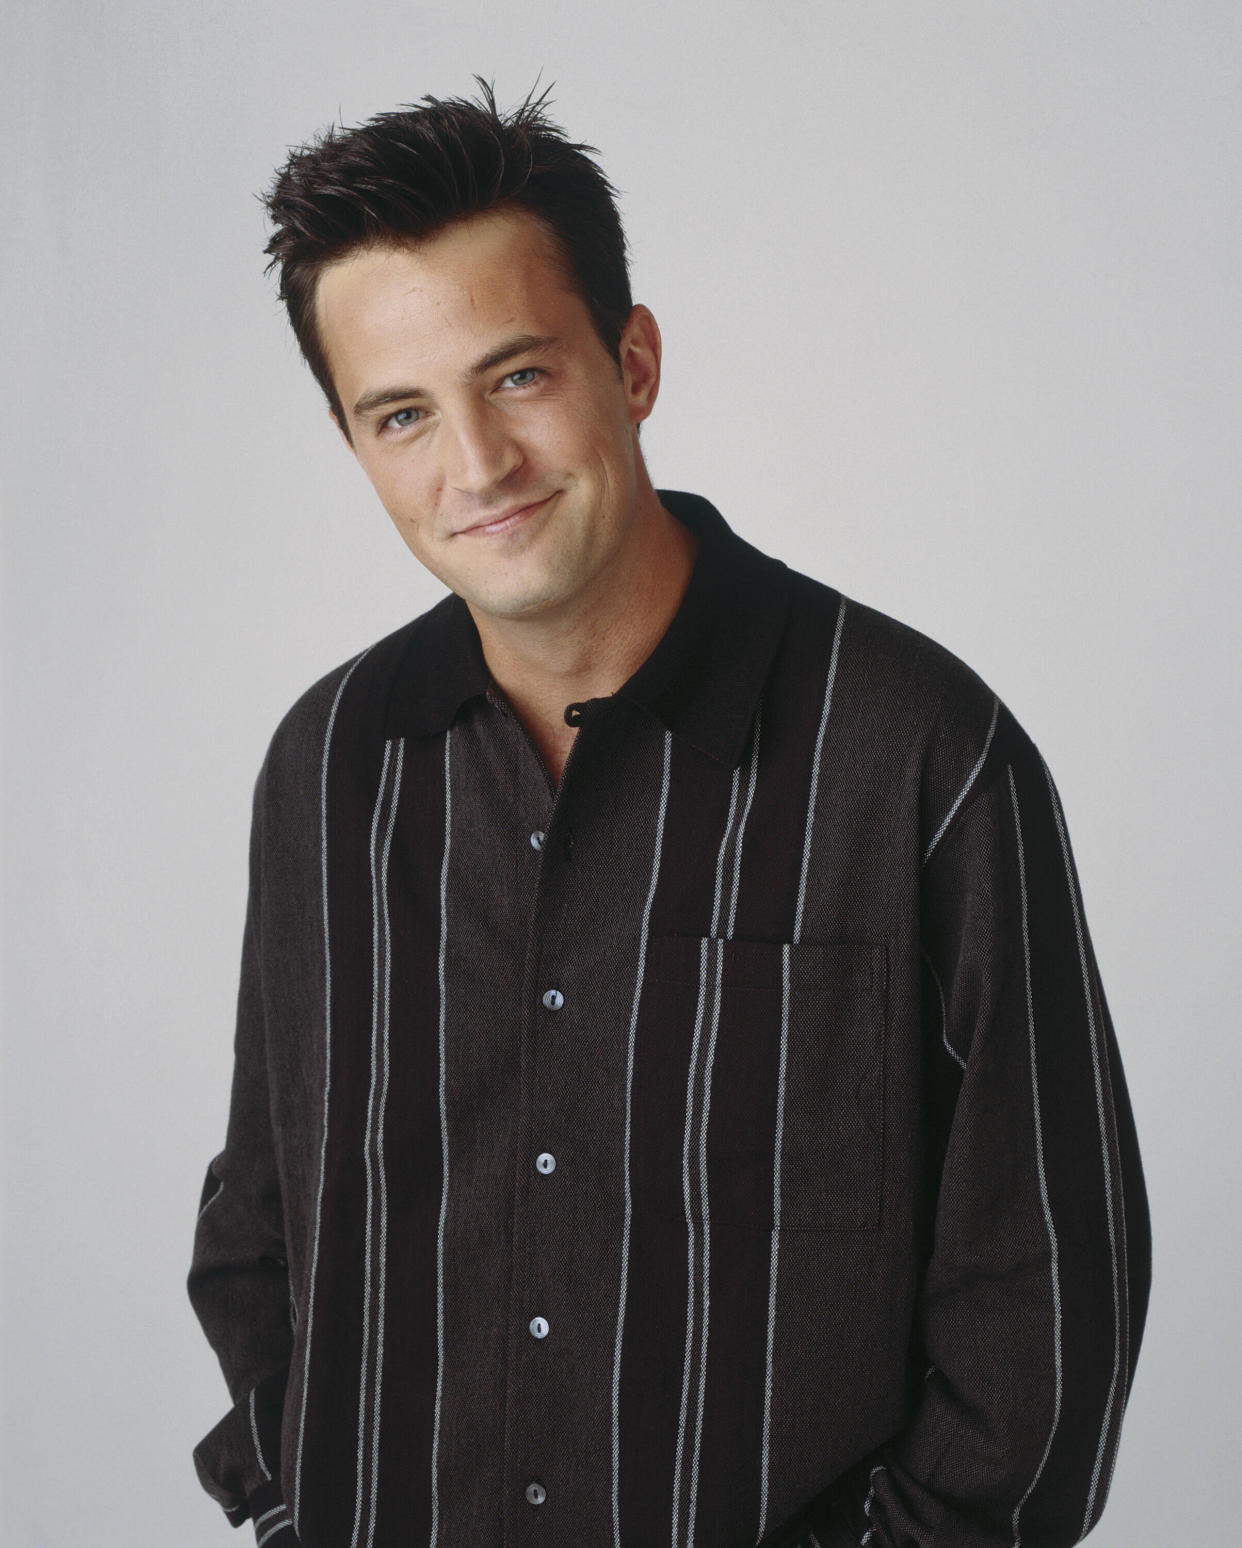 Chandler était caractérisé par son sens de la repartie et son sarcasme, auxquels Matthew Perry donnait brillamment vie.